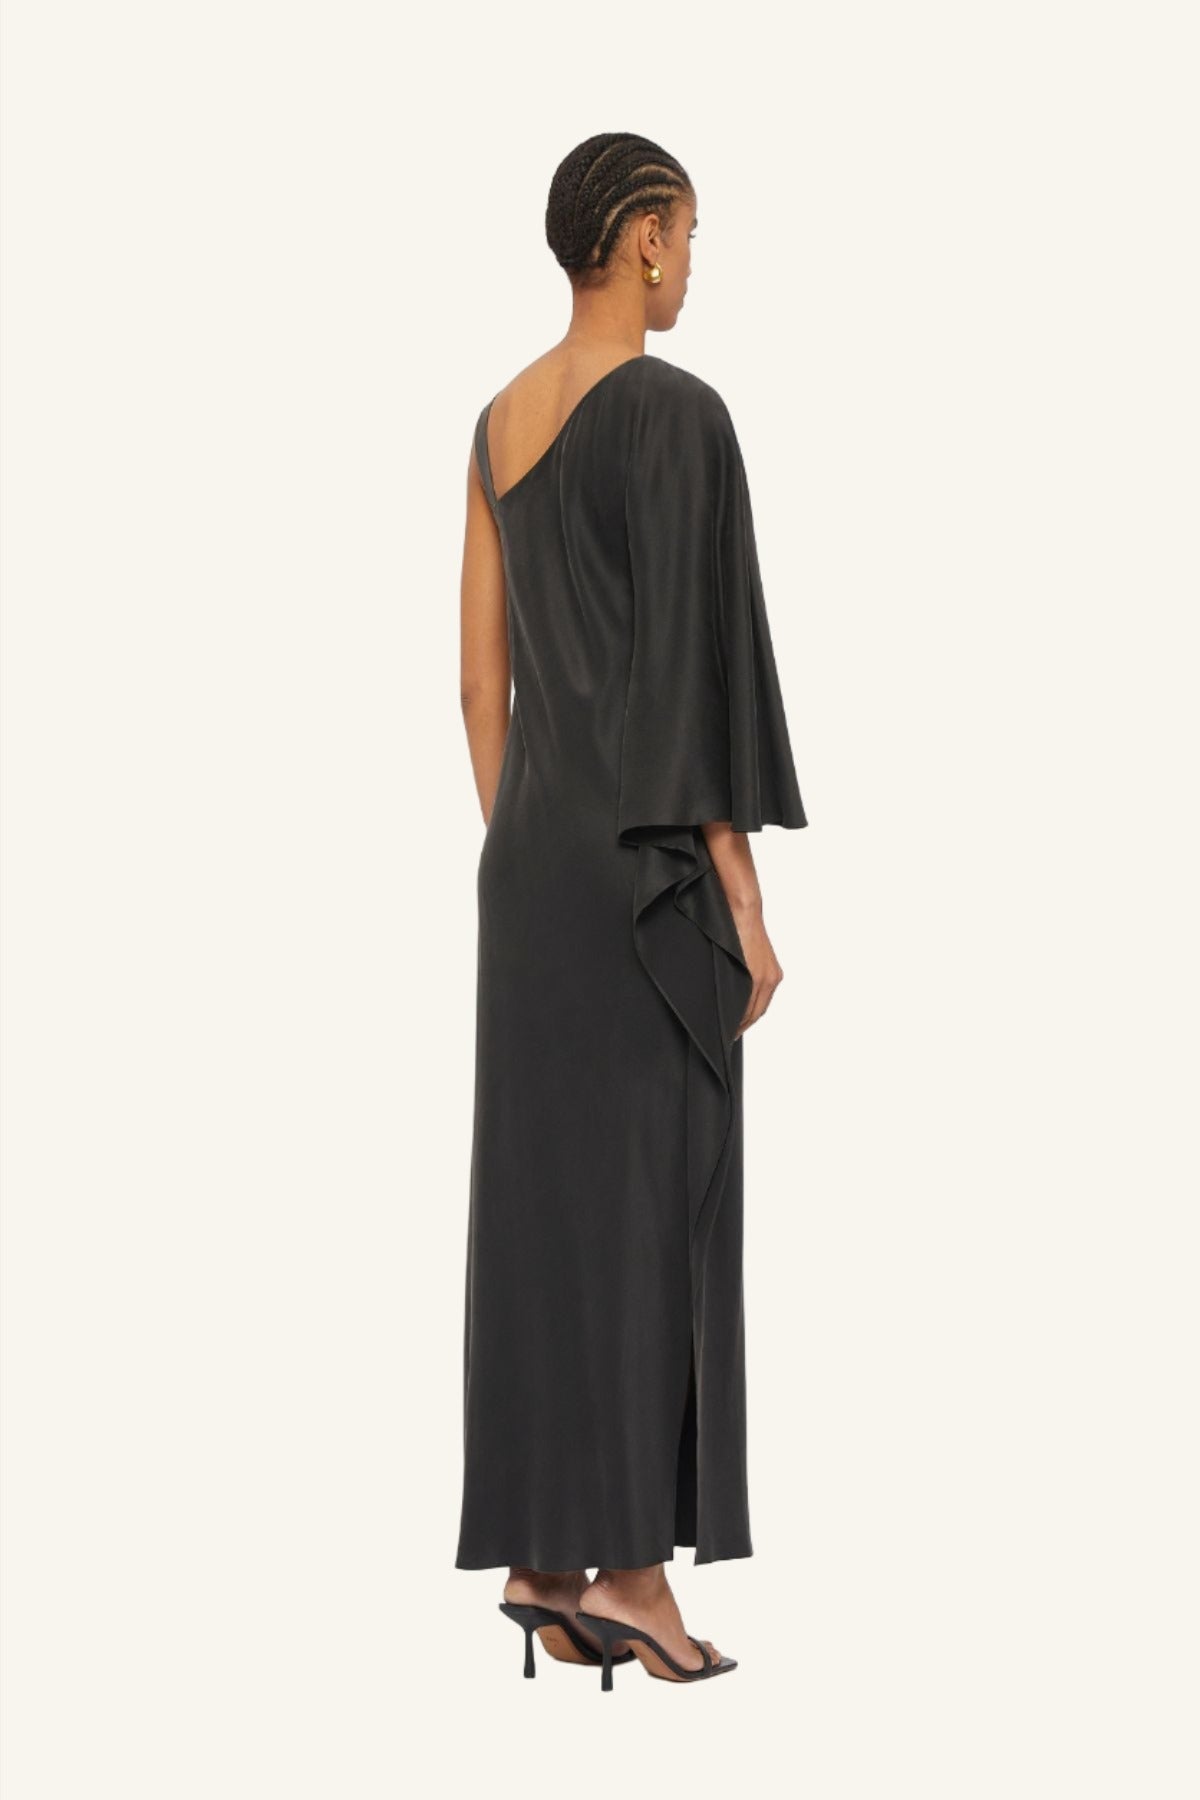 Australian women's designer Ginger & Smart Black Silk One Shoulder Full Length Gown